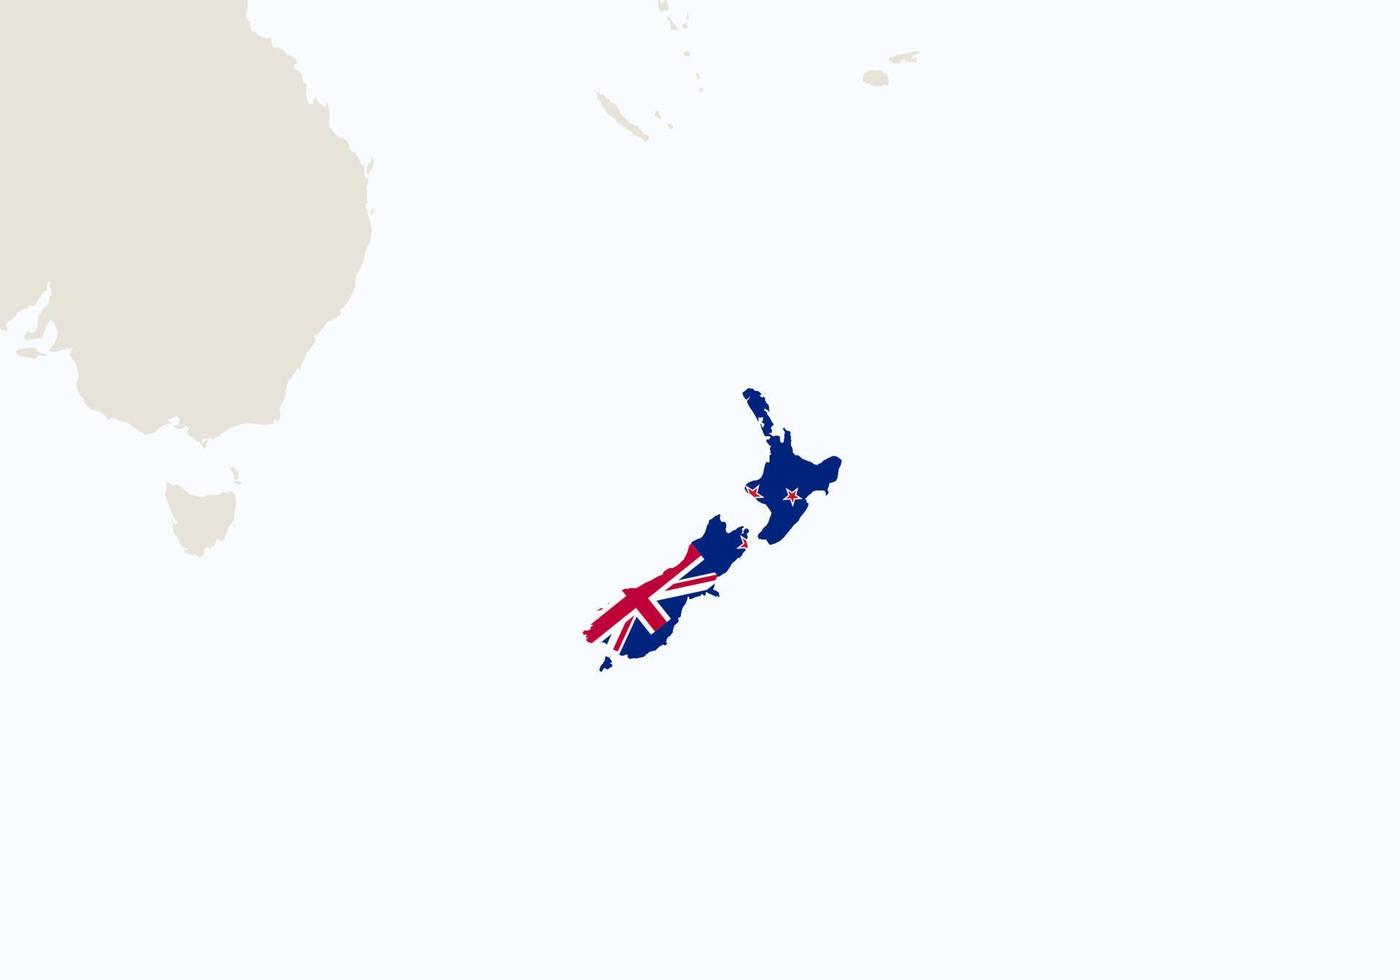 océanie avec carte de la nouvelle-zélande en surbrillance. vecteur